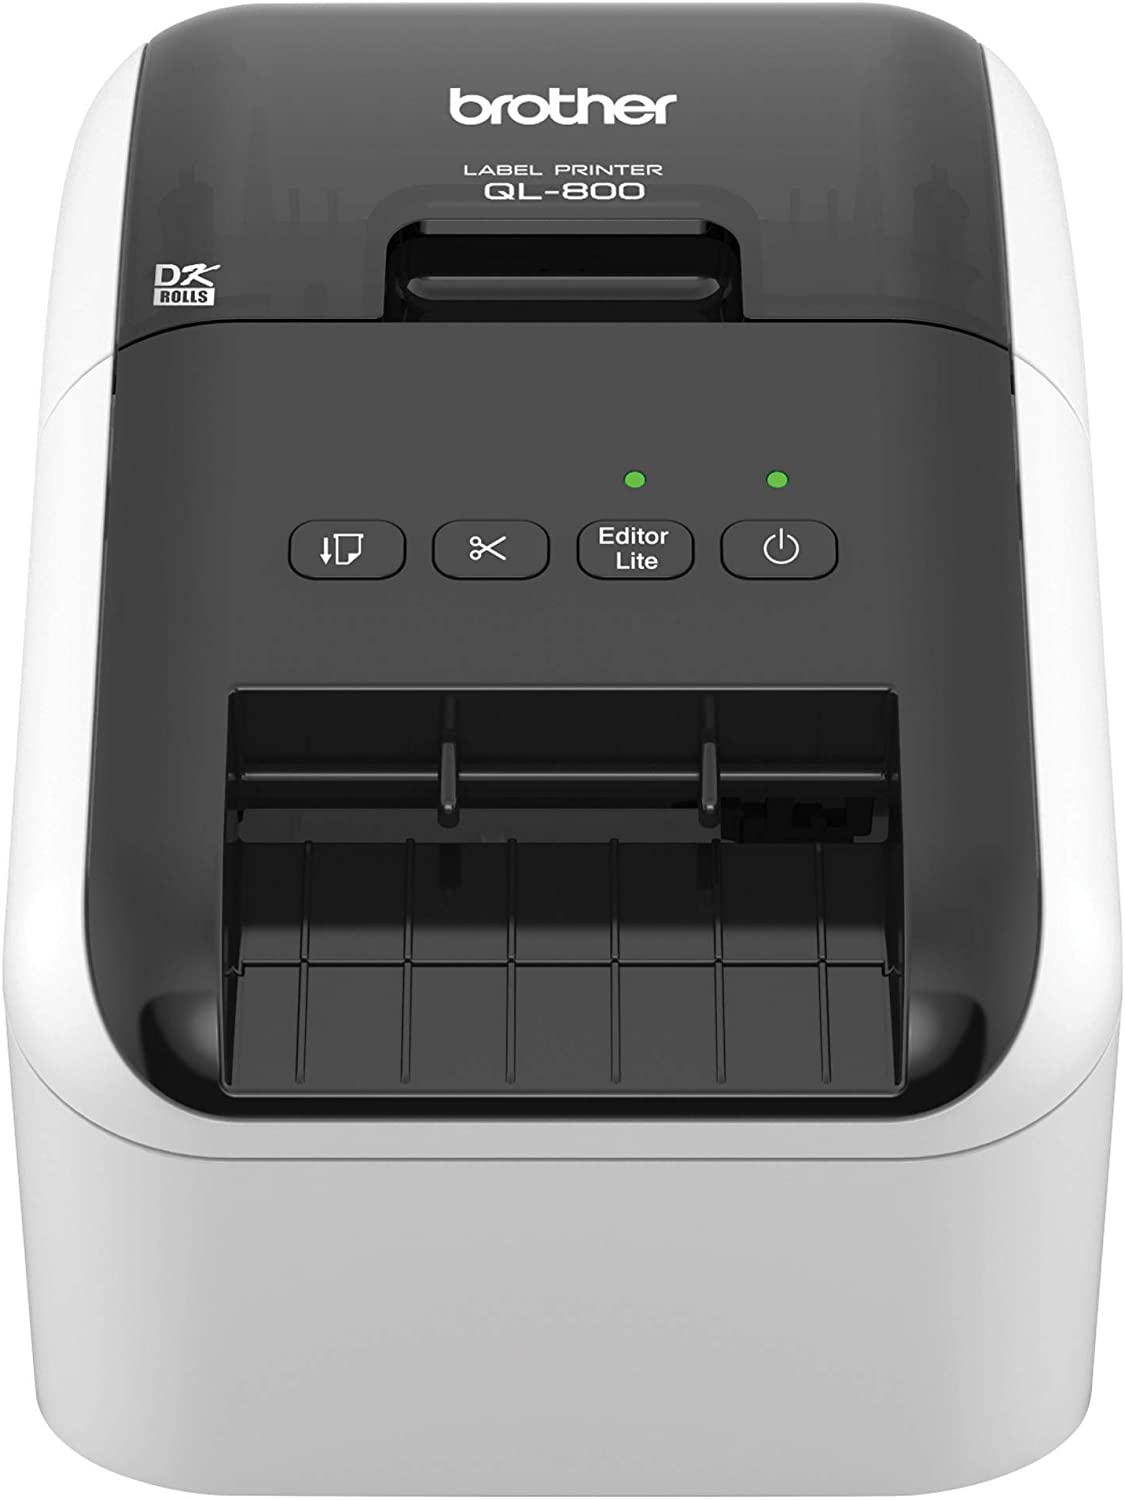 Brother QL800 Impresora Profesional Termica de Etiquetas USB - 93 Etiquetas por min. - Resolucion 300x600ppp - Impresion a Negro y Rojo - Cortador Automatico